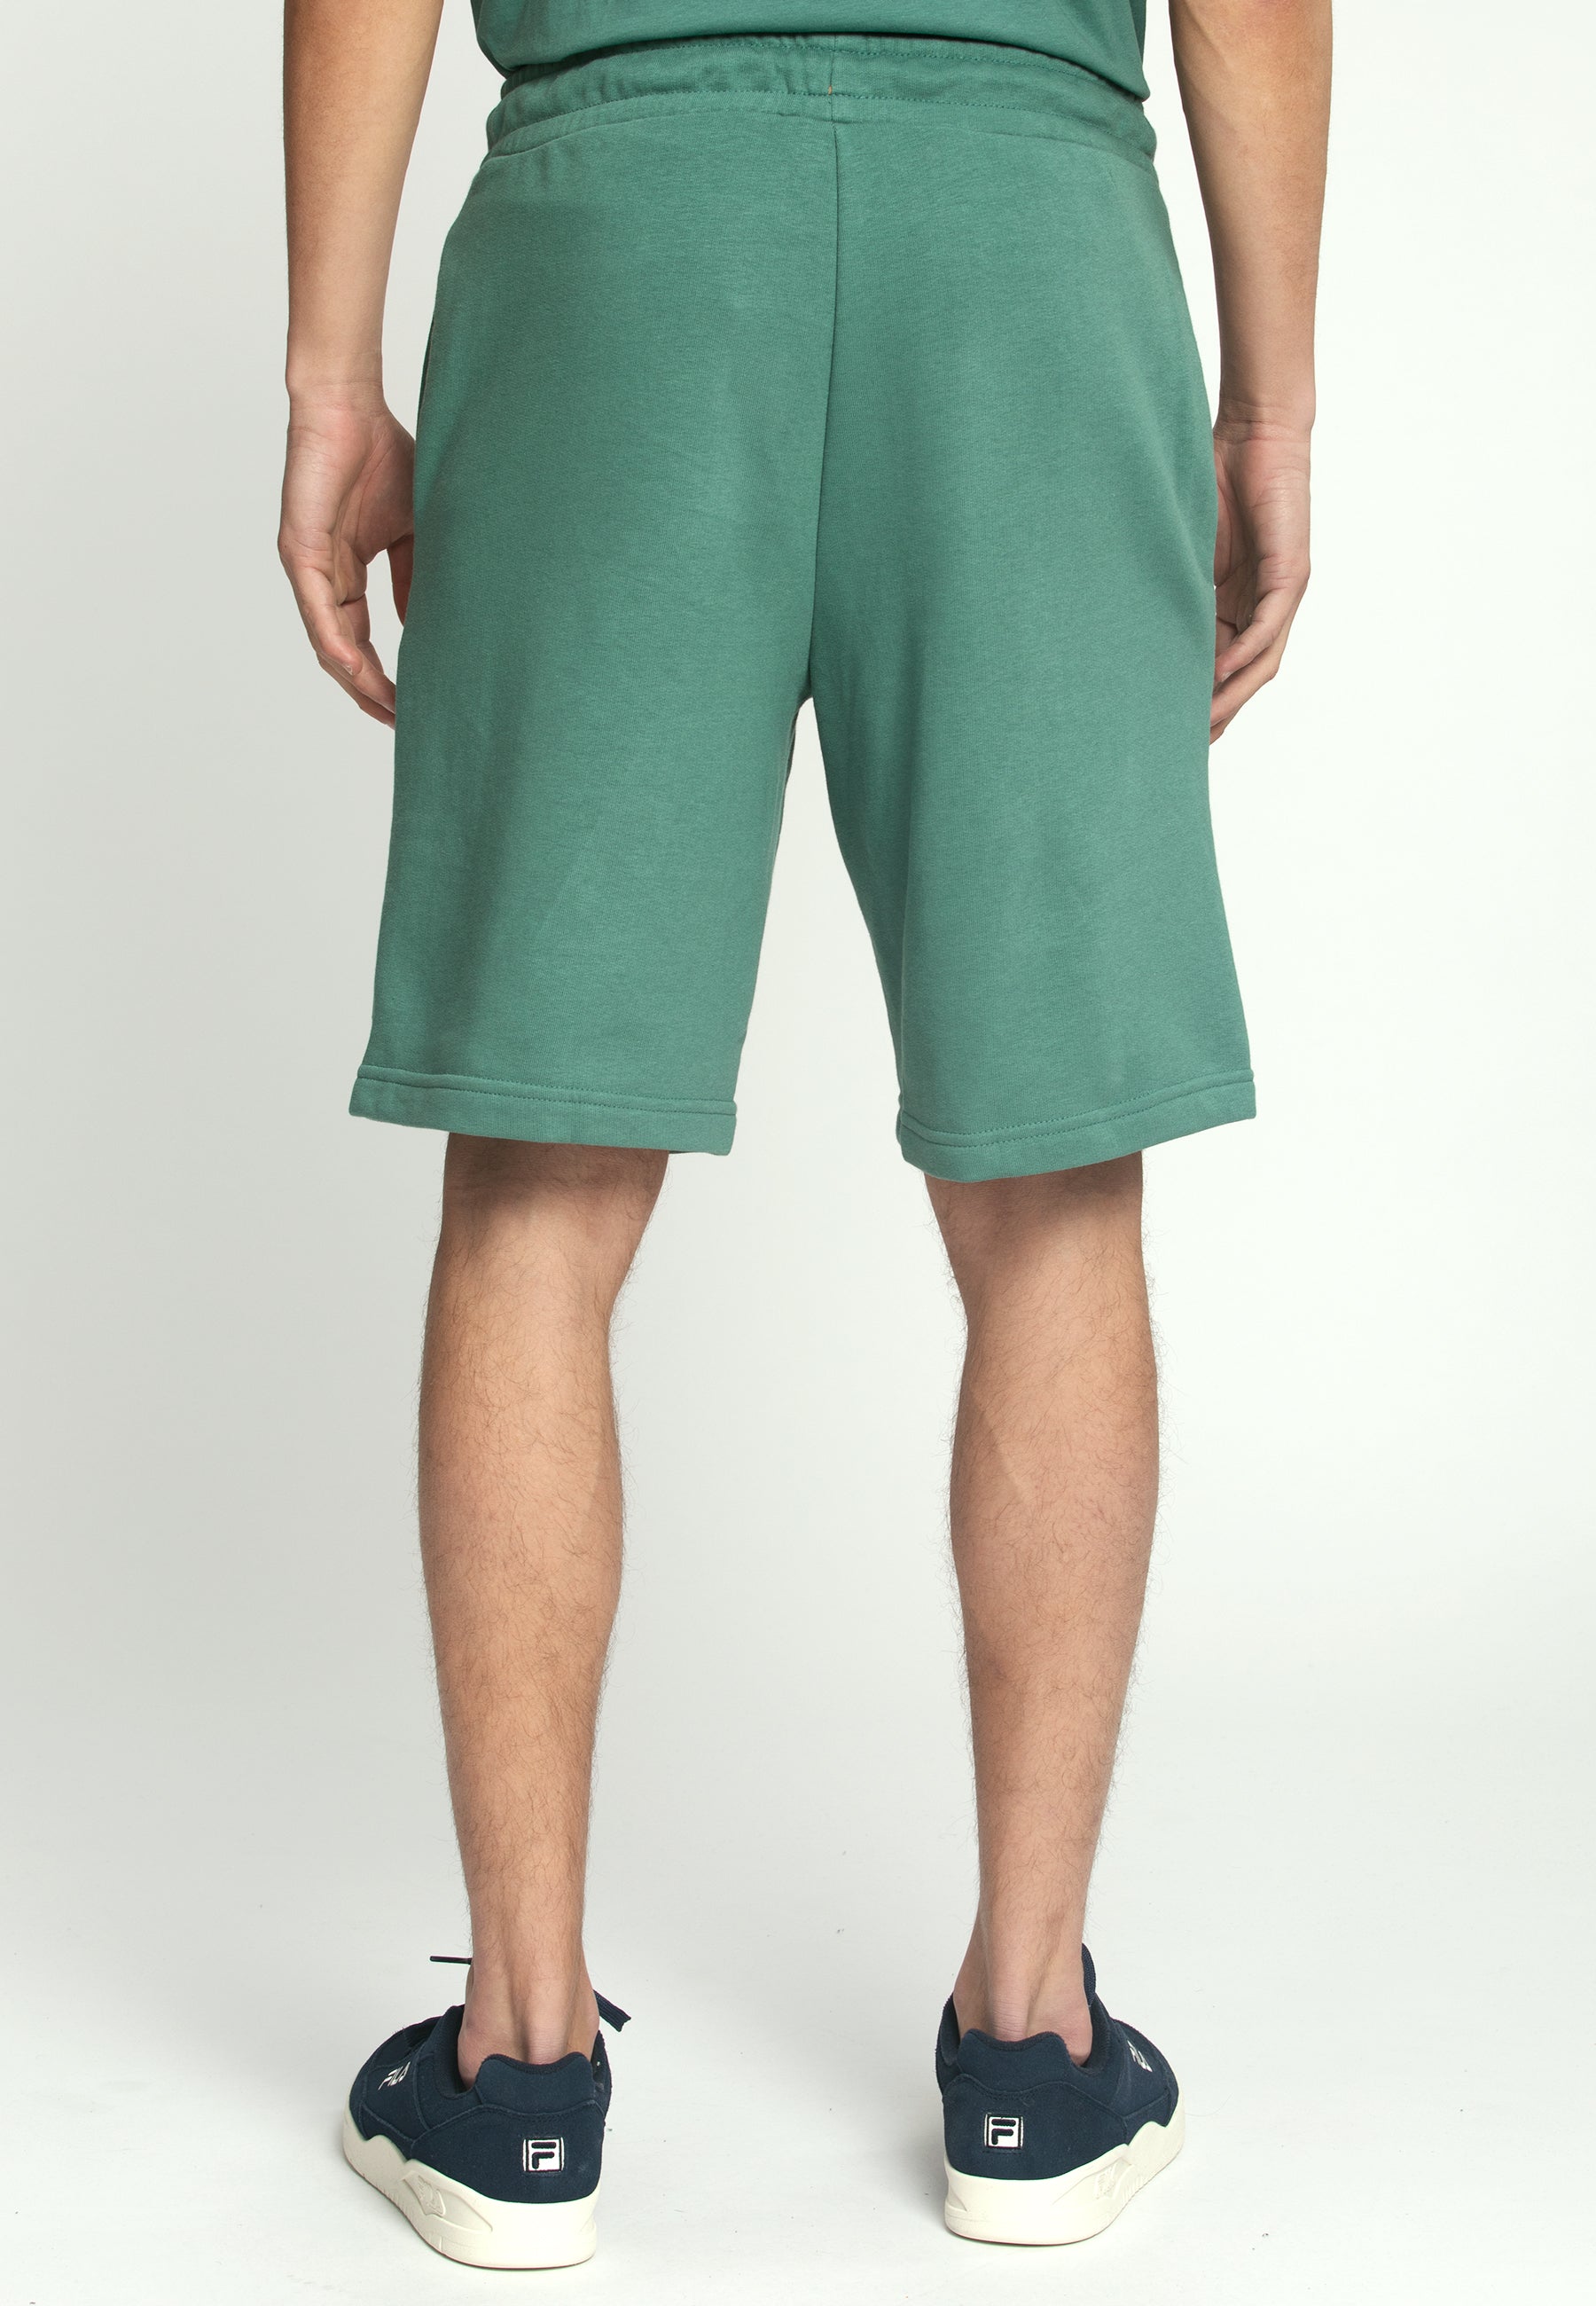 Blehen Sweat Shorts in Blue Spruce Shorts Fila   